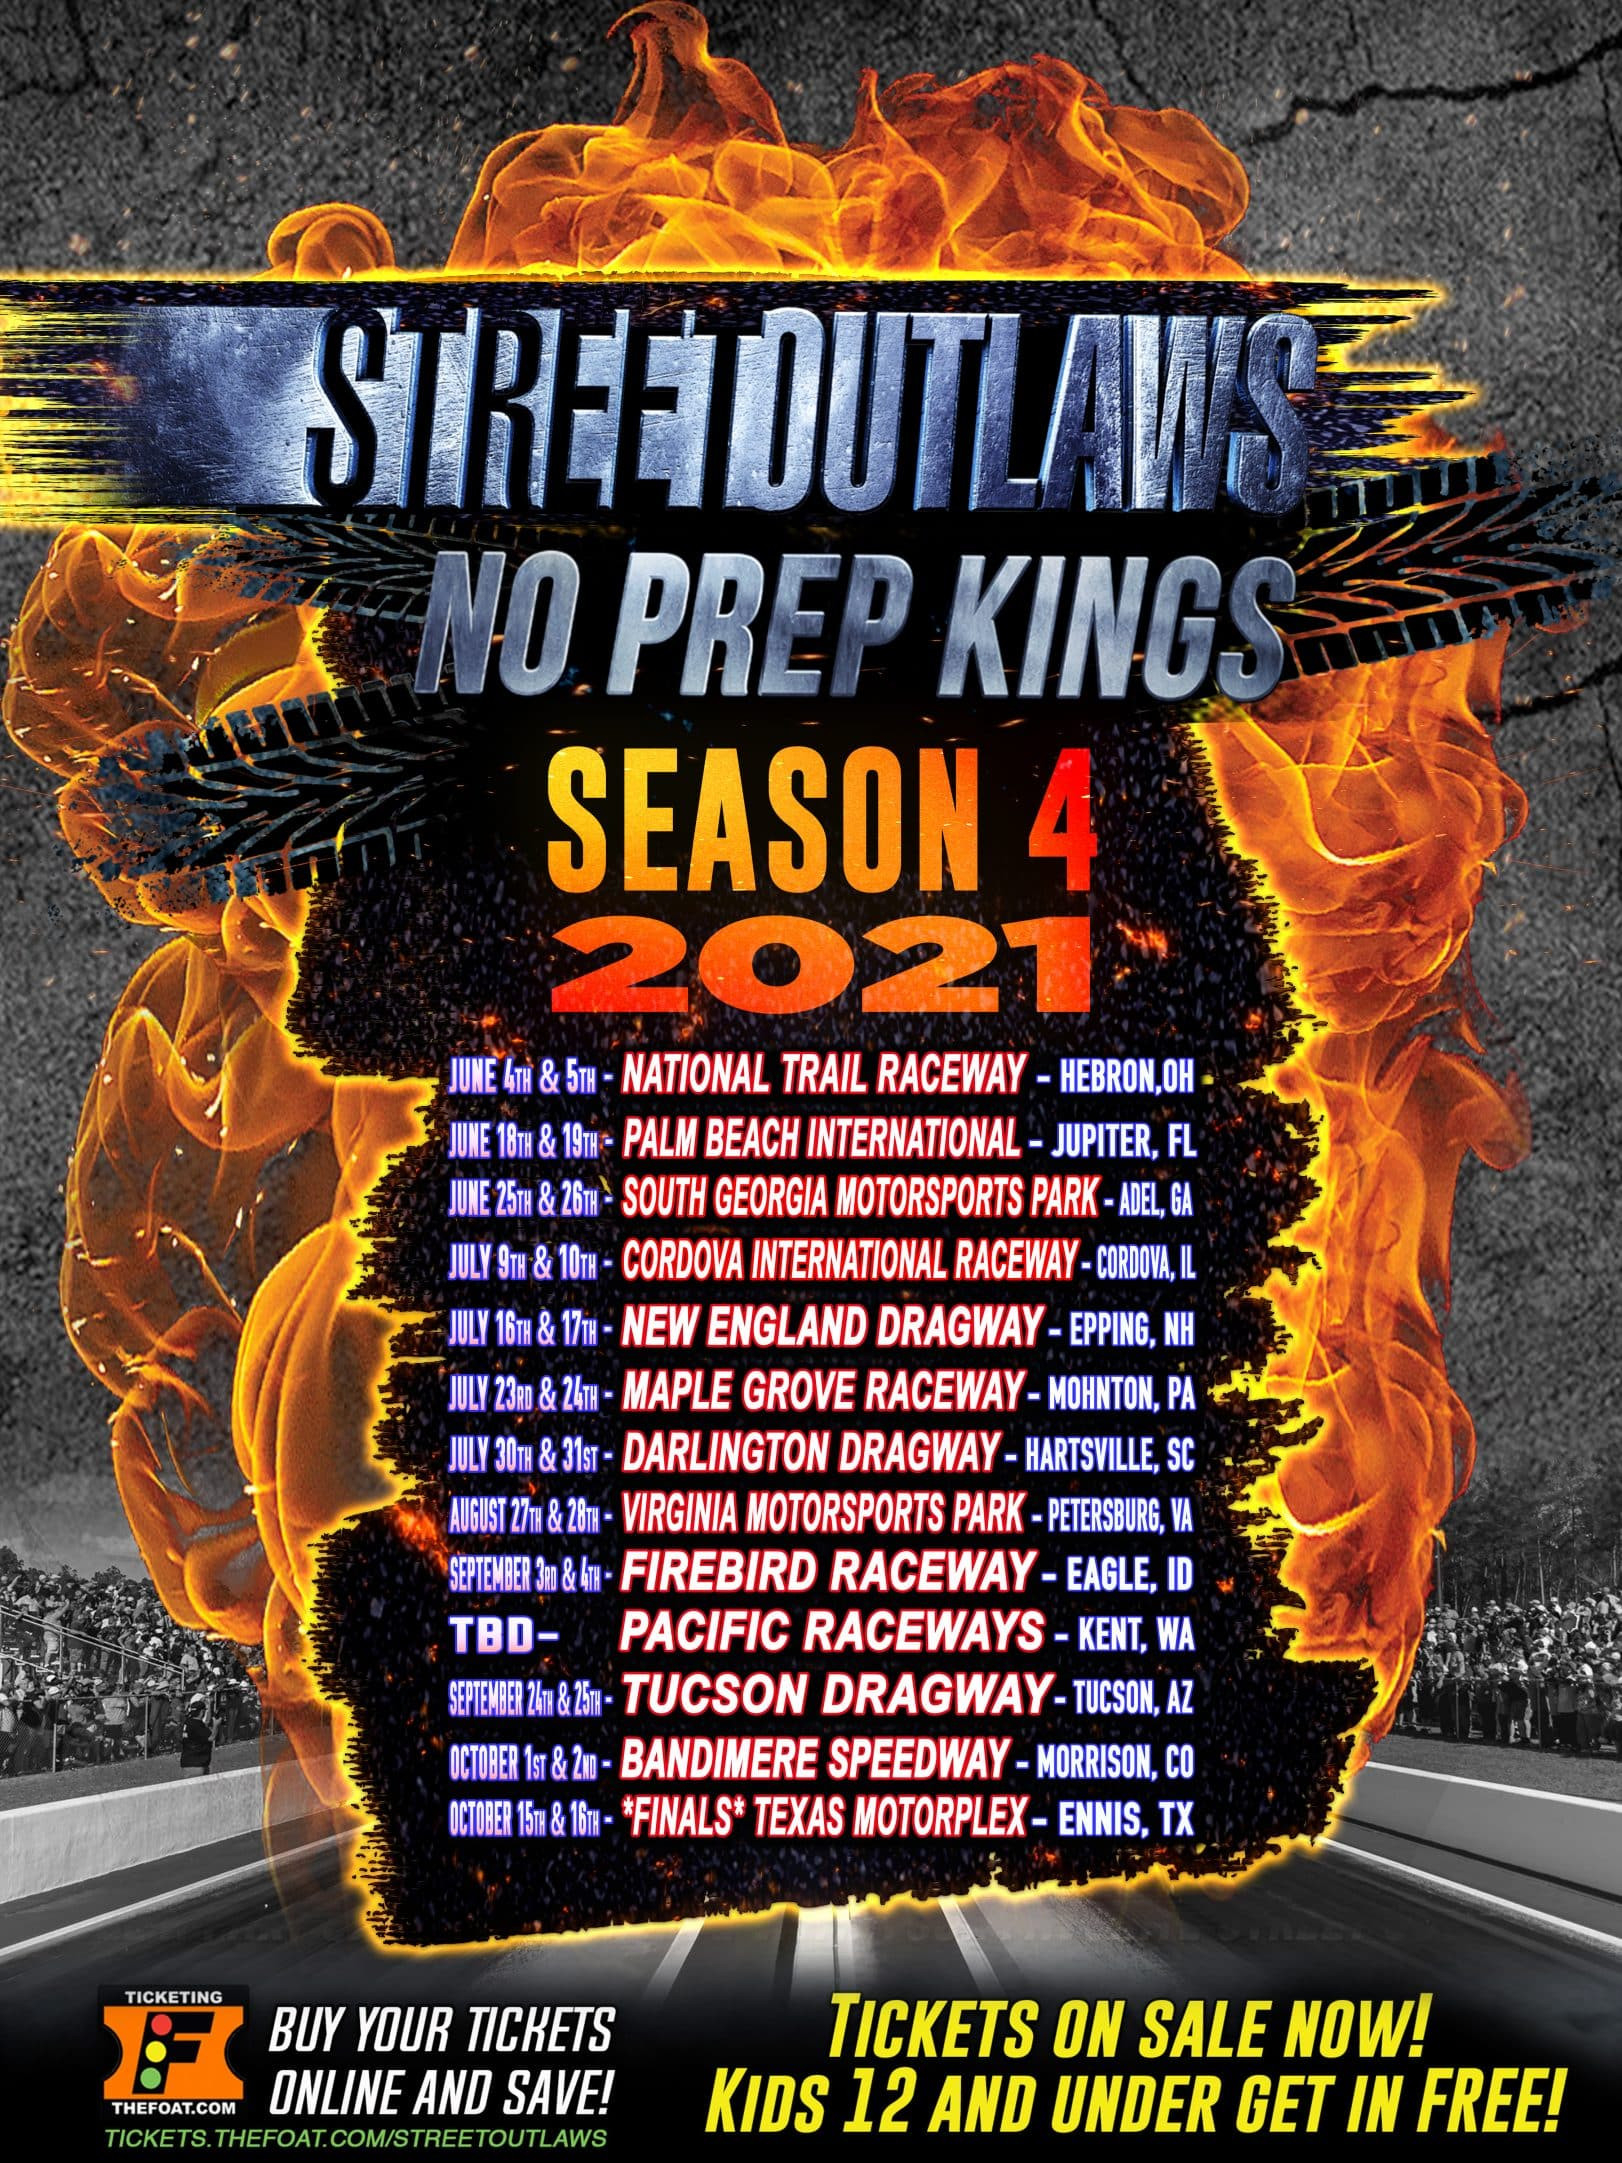 No Prep Kings Season 4 Schedule 2021 - No Prep Racing  Pa Reut Season 2021